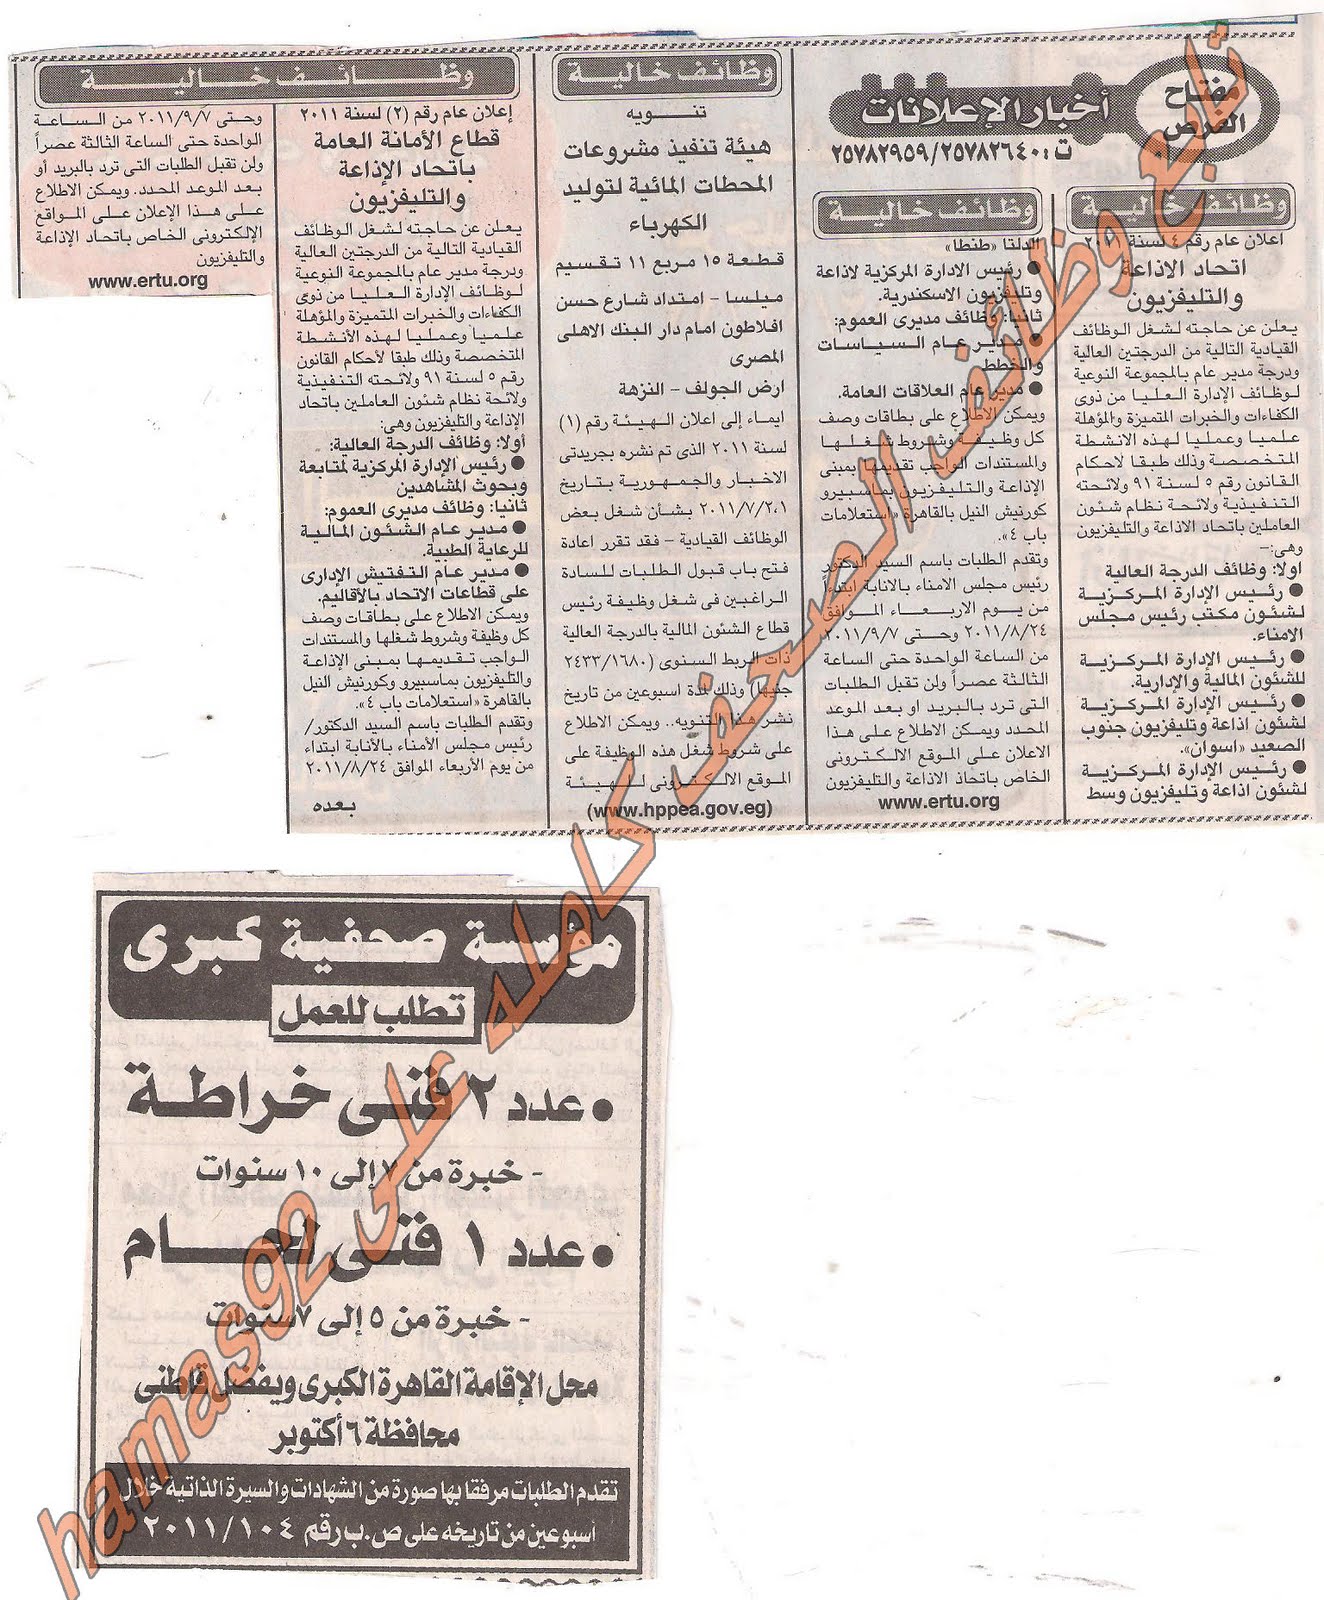 وظائف خالية من جريدة الاخبار الخميس 25 اغسطس 2011 Picture+001